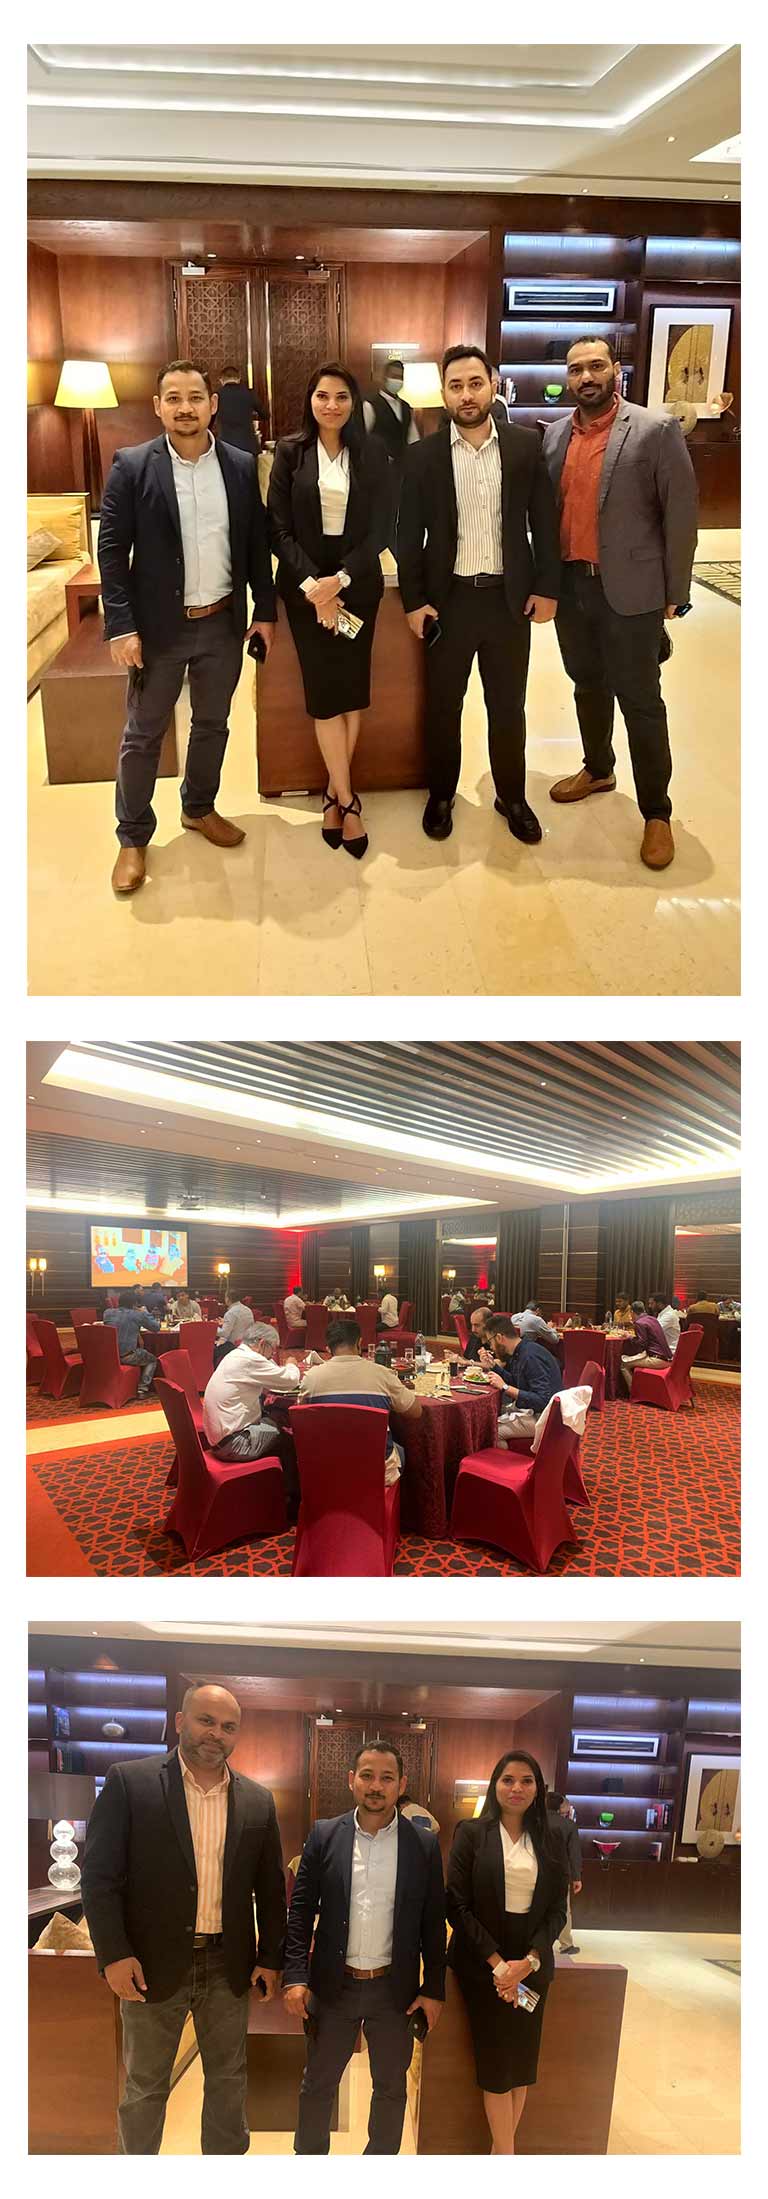 حفل الإفطار في فندق رافلز دبي مع الاستشاريين 